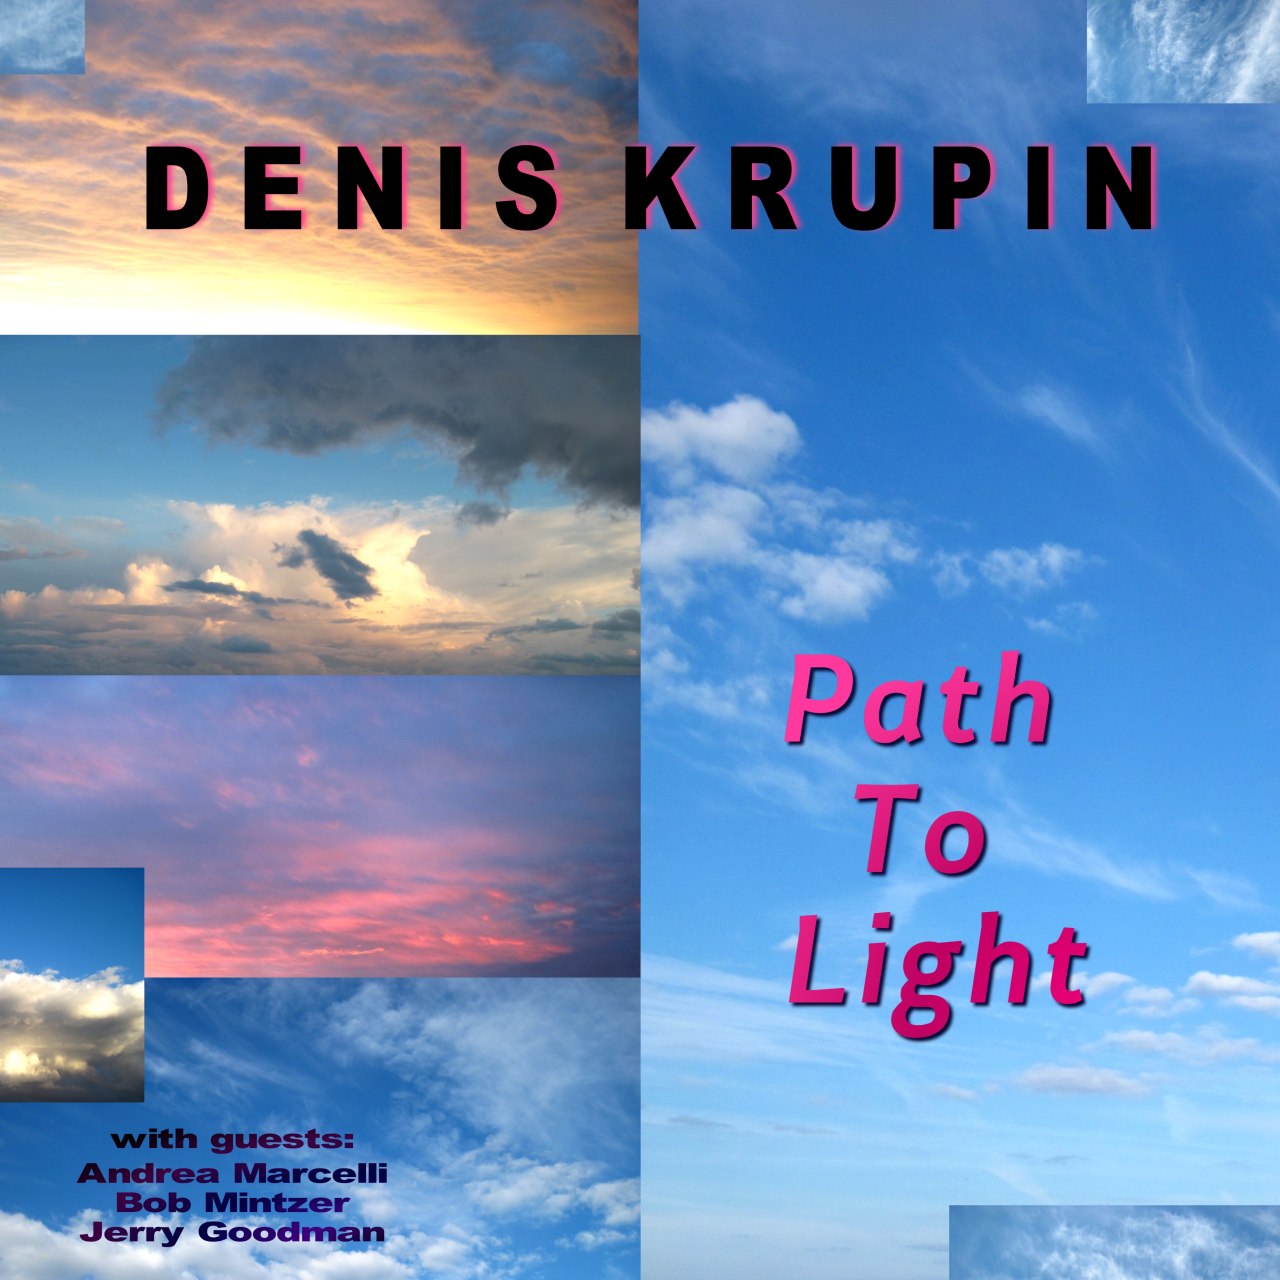 фото: Денис Крупин записал альбом "Path To Light" посвящённый Лайлу Мэйсу